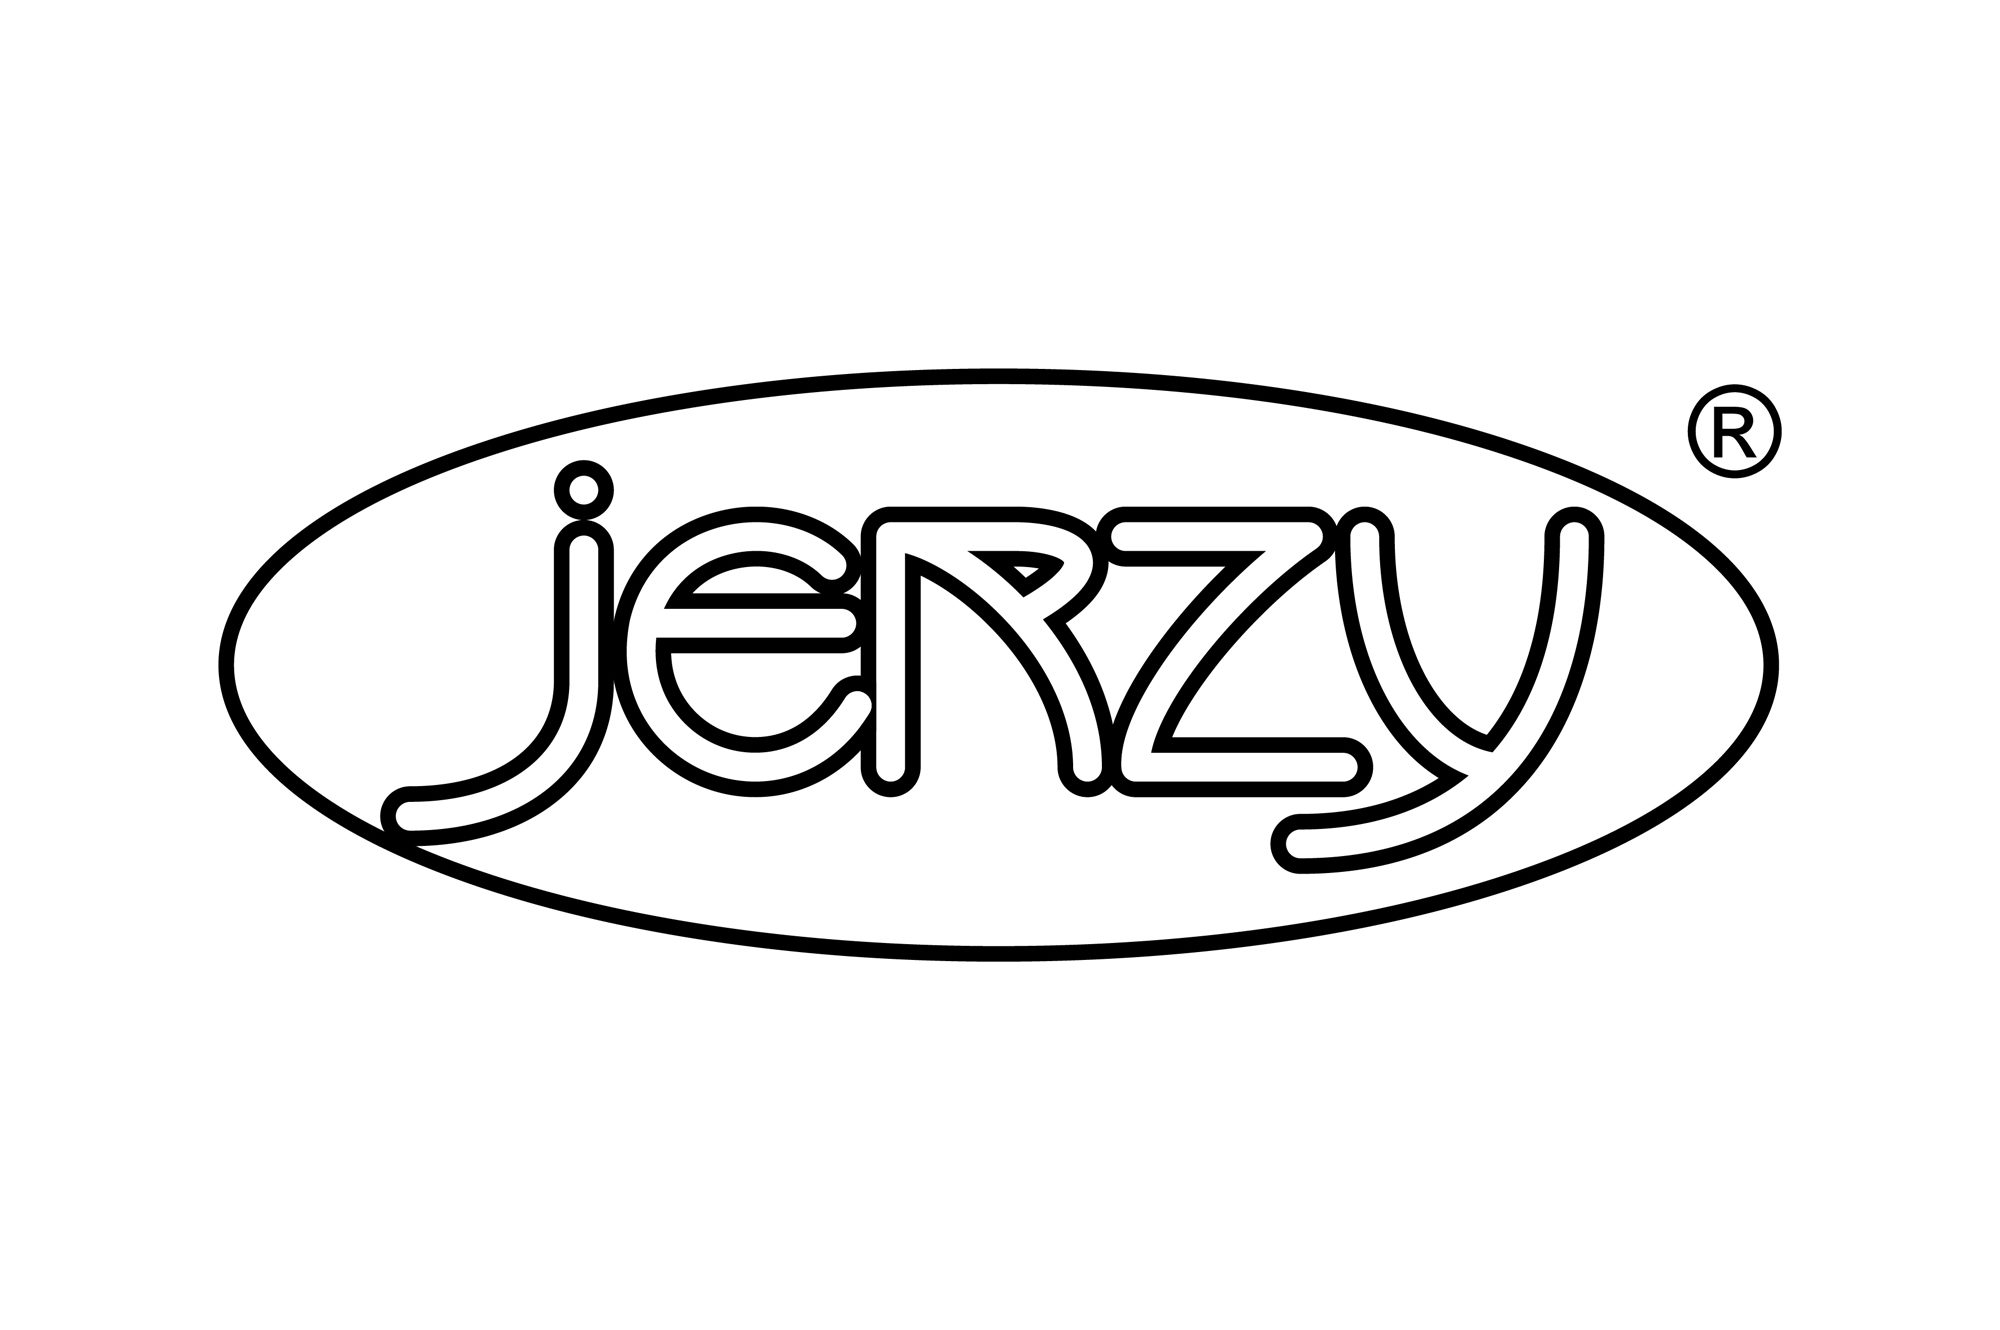 Jerzy - logo PLANSZA 30x30cm EDYCJA